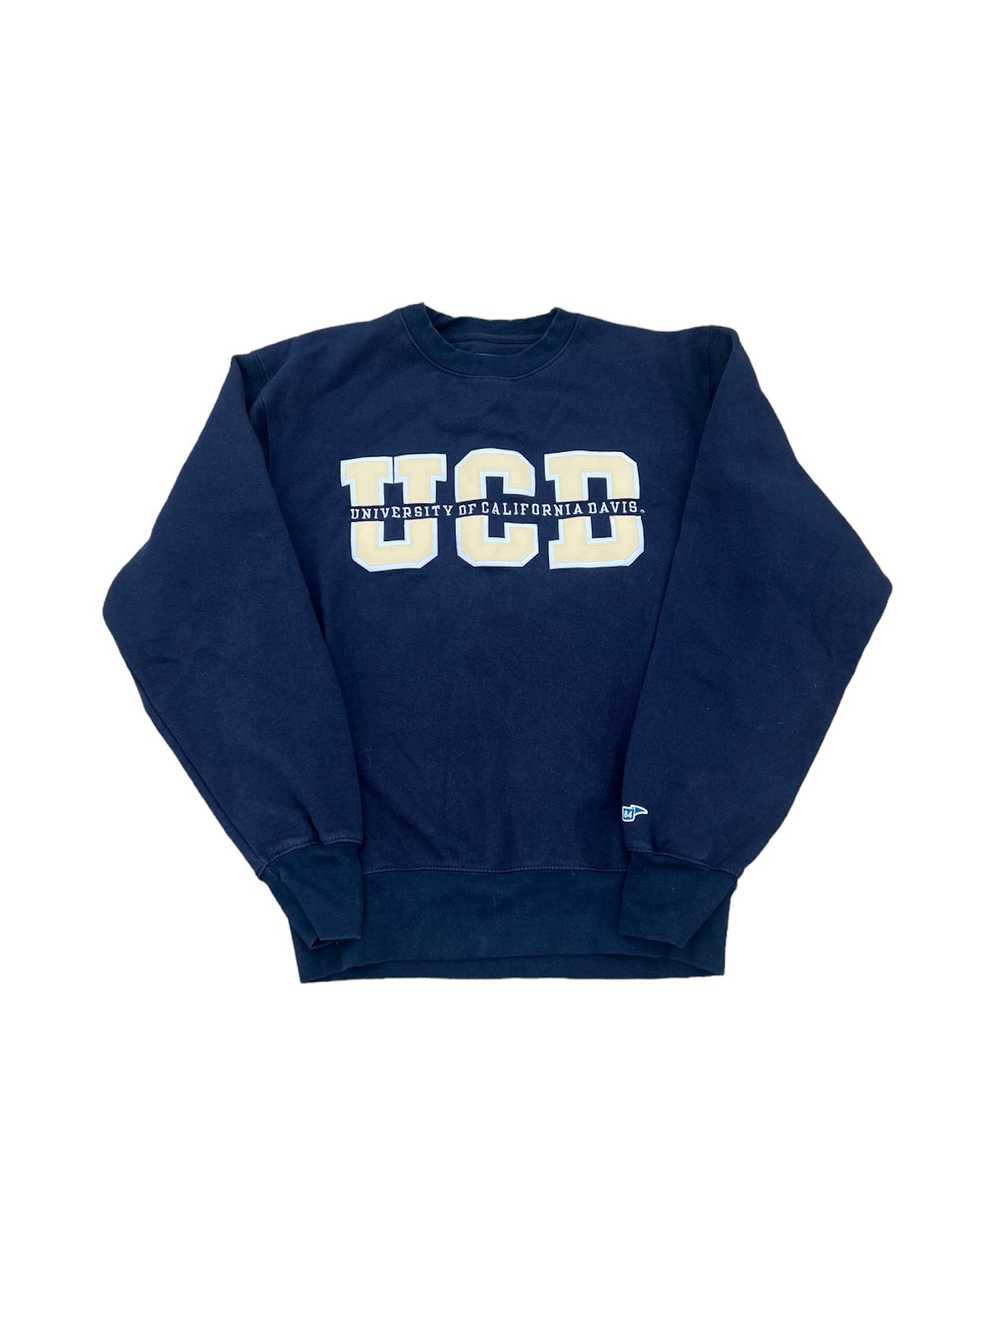 Vintage UC Davis Vintage College Hoodie Blue 84 t… - image 1